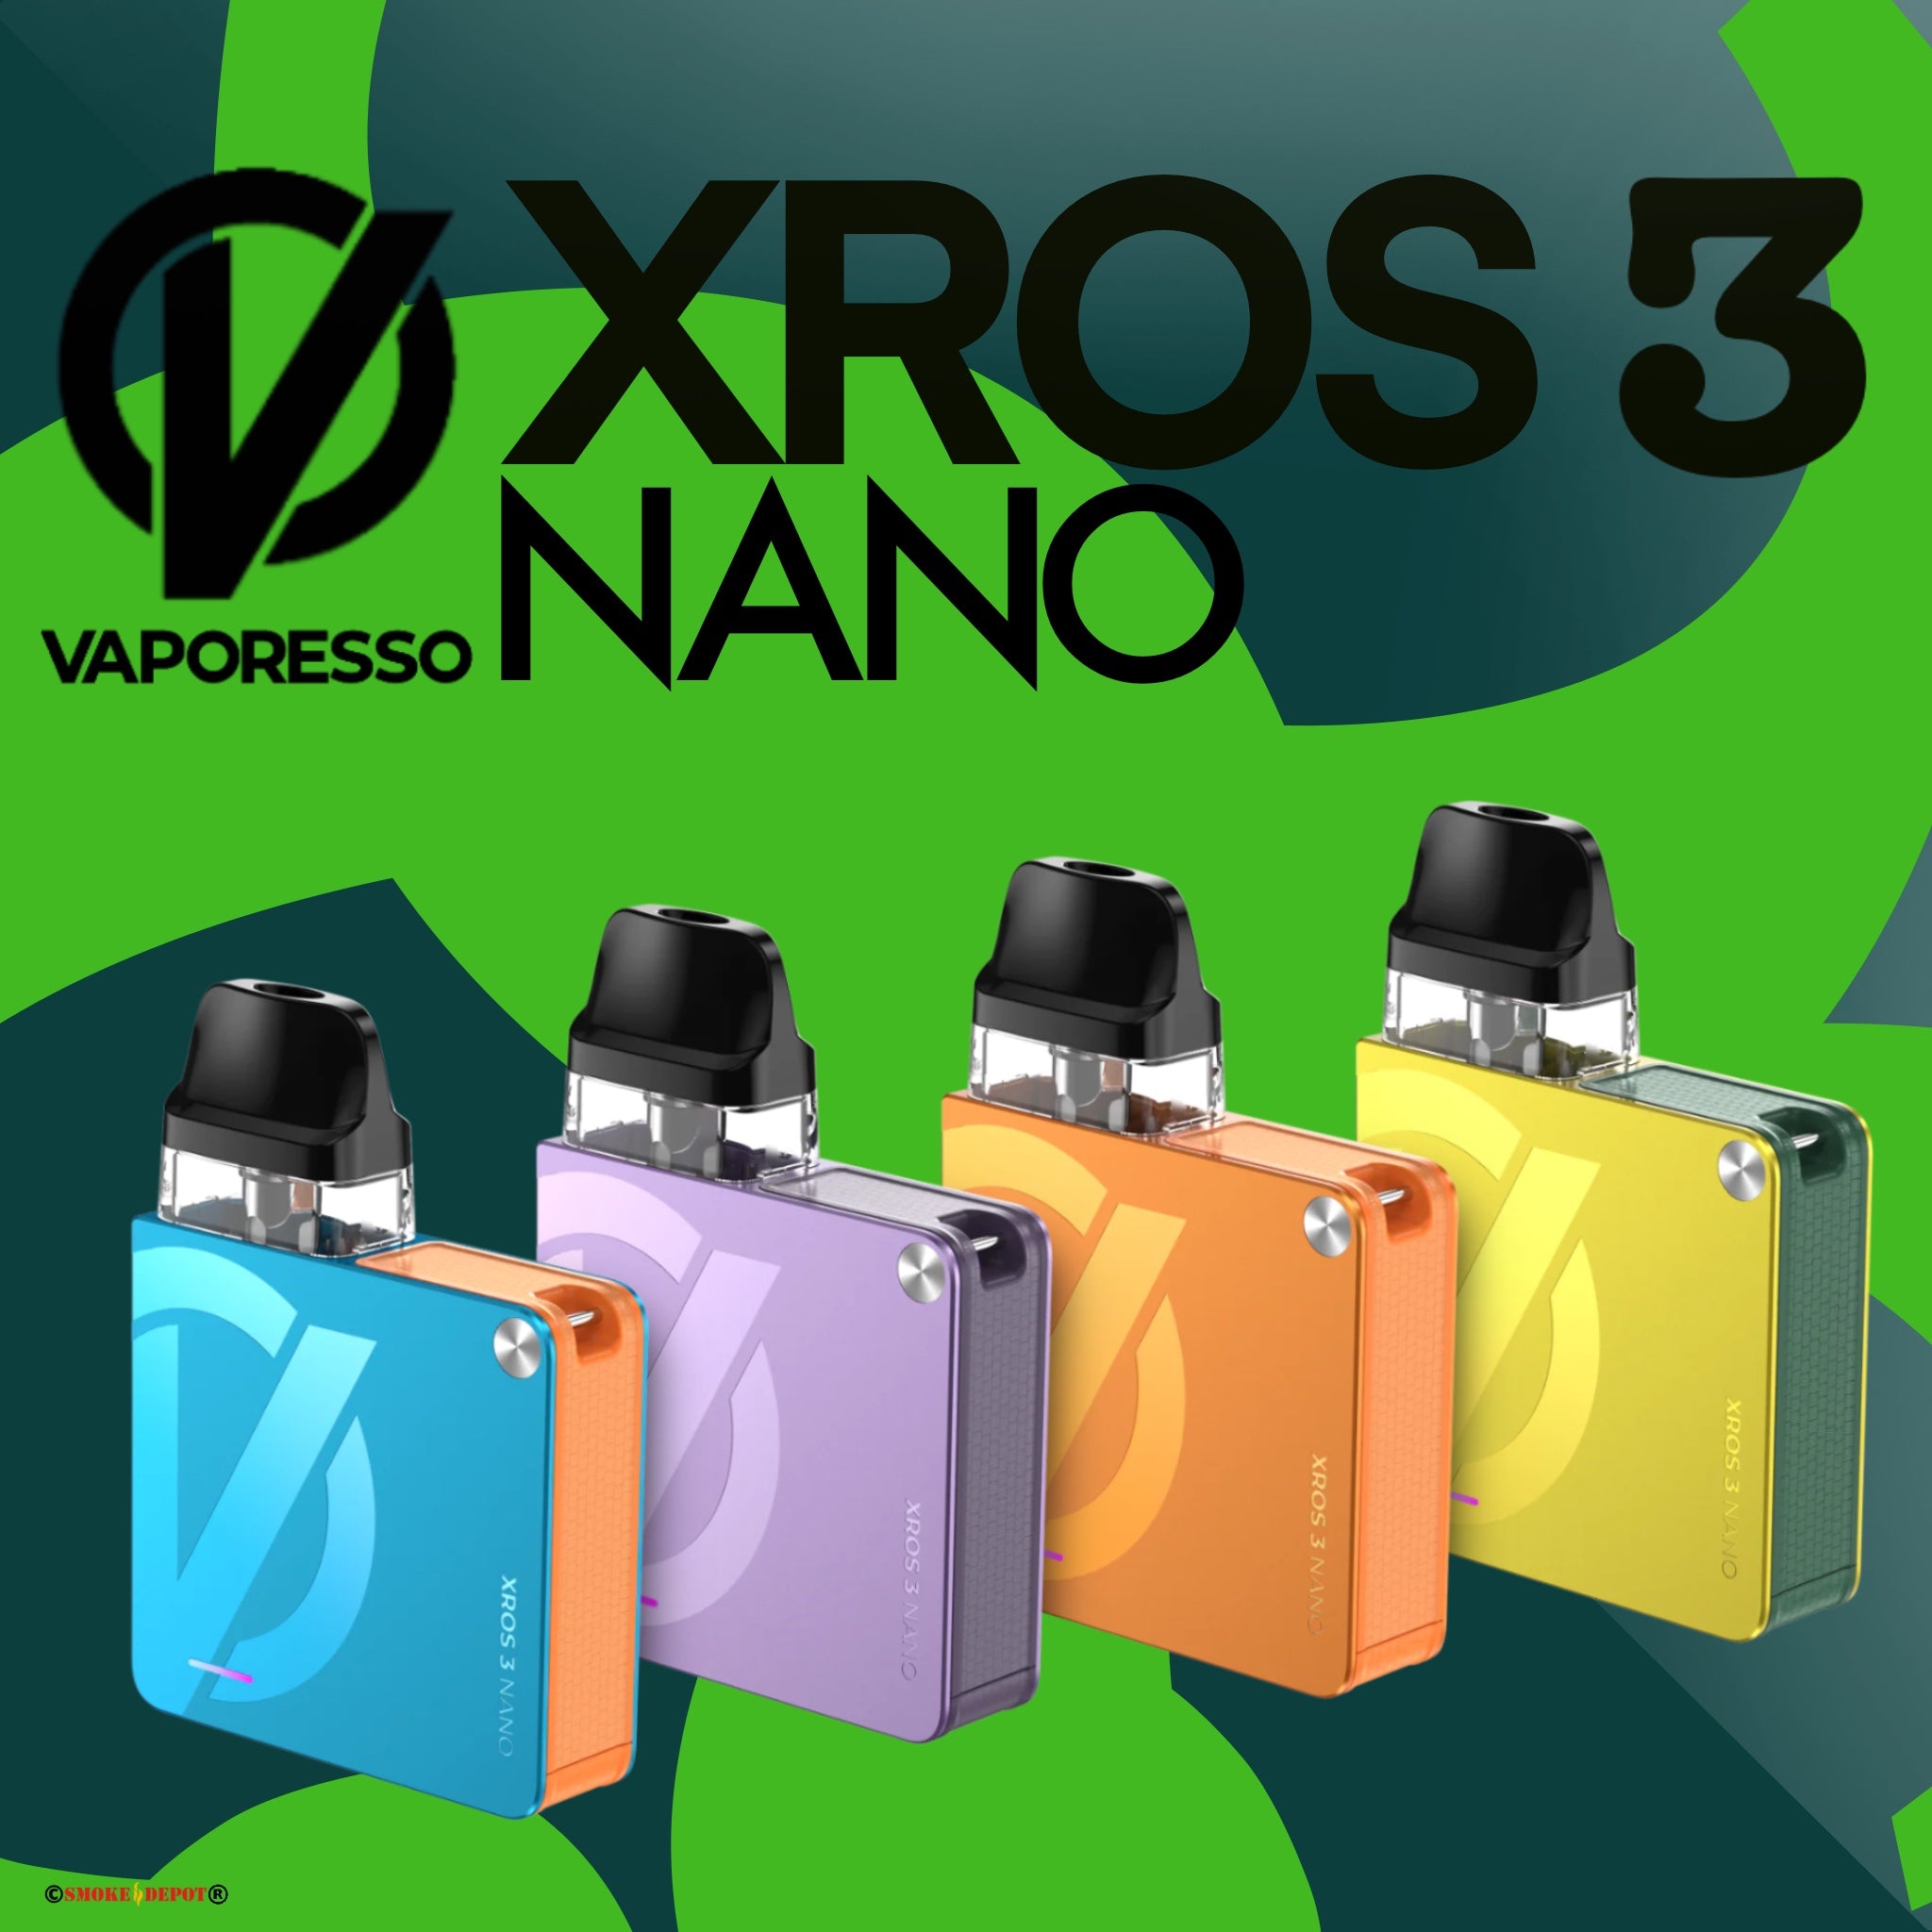 VAPORESSO XROS 3 Nano Kit